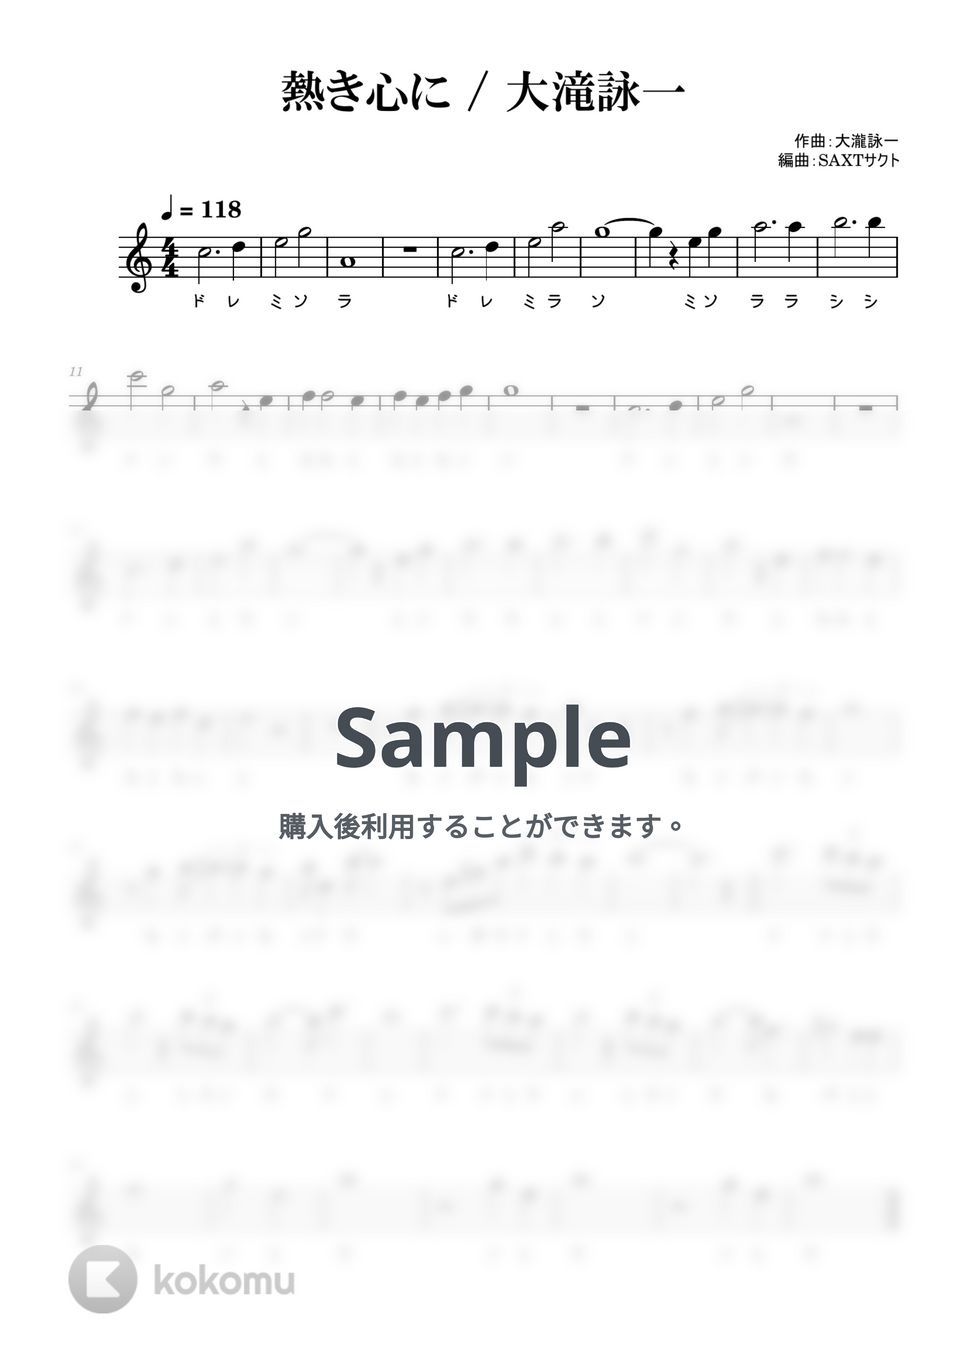 大滝詠一 - 熱き心に (めちゃラク譜・ドレミあり) by SAXT